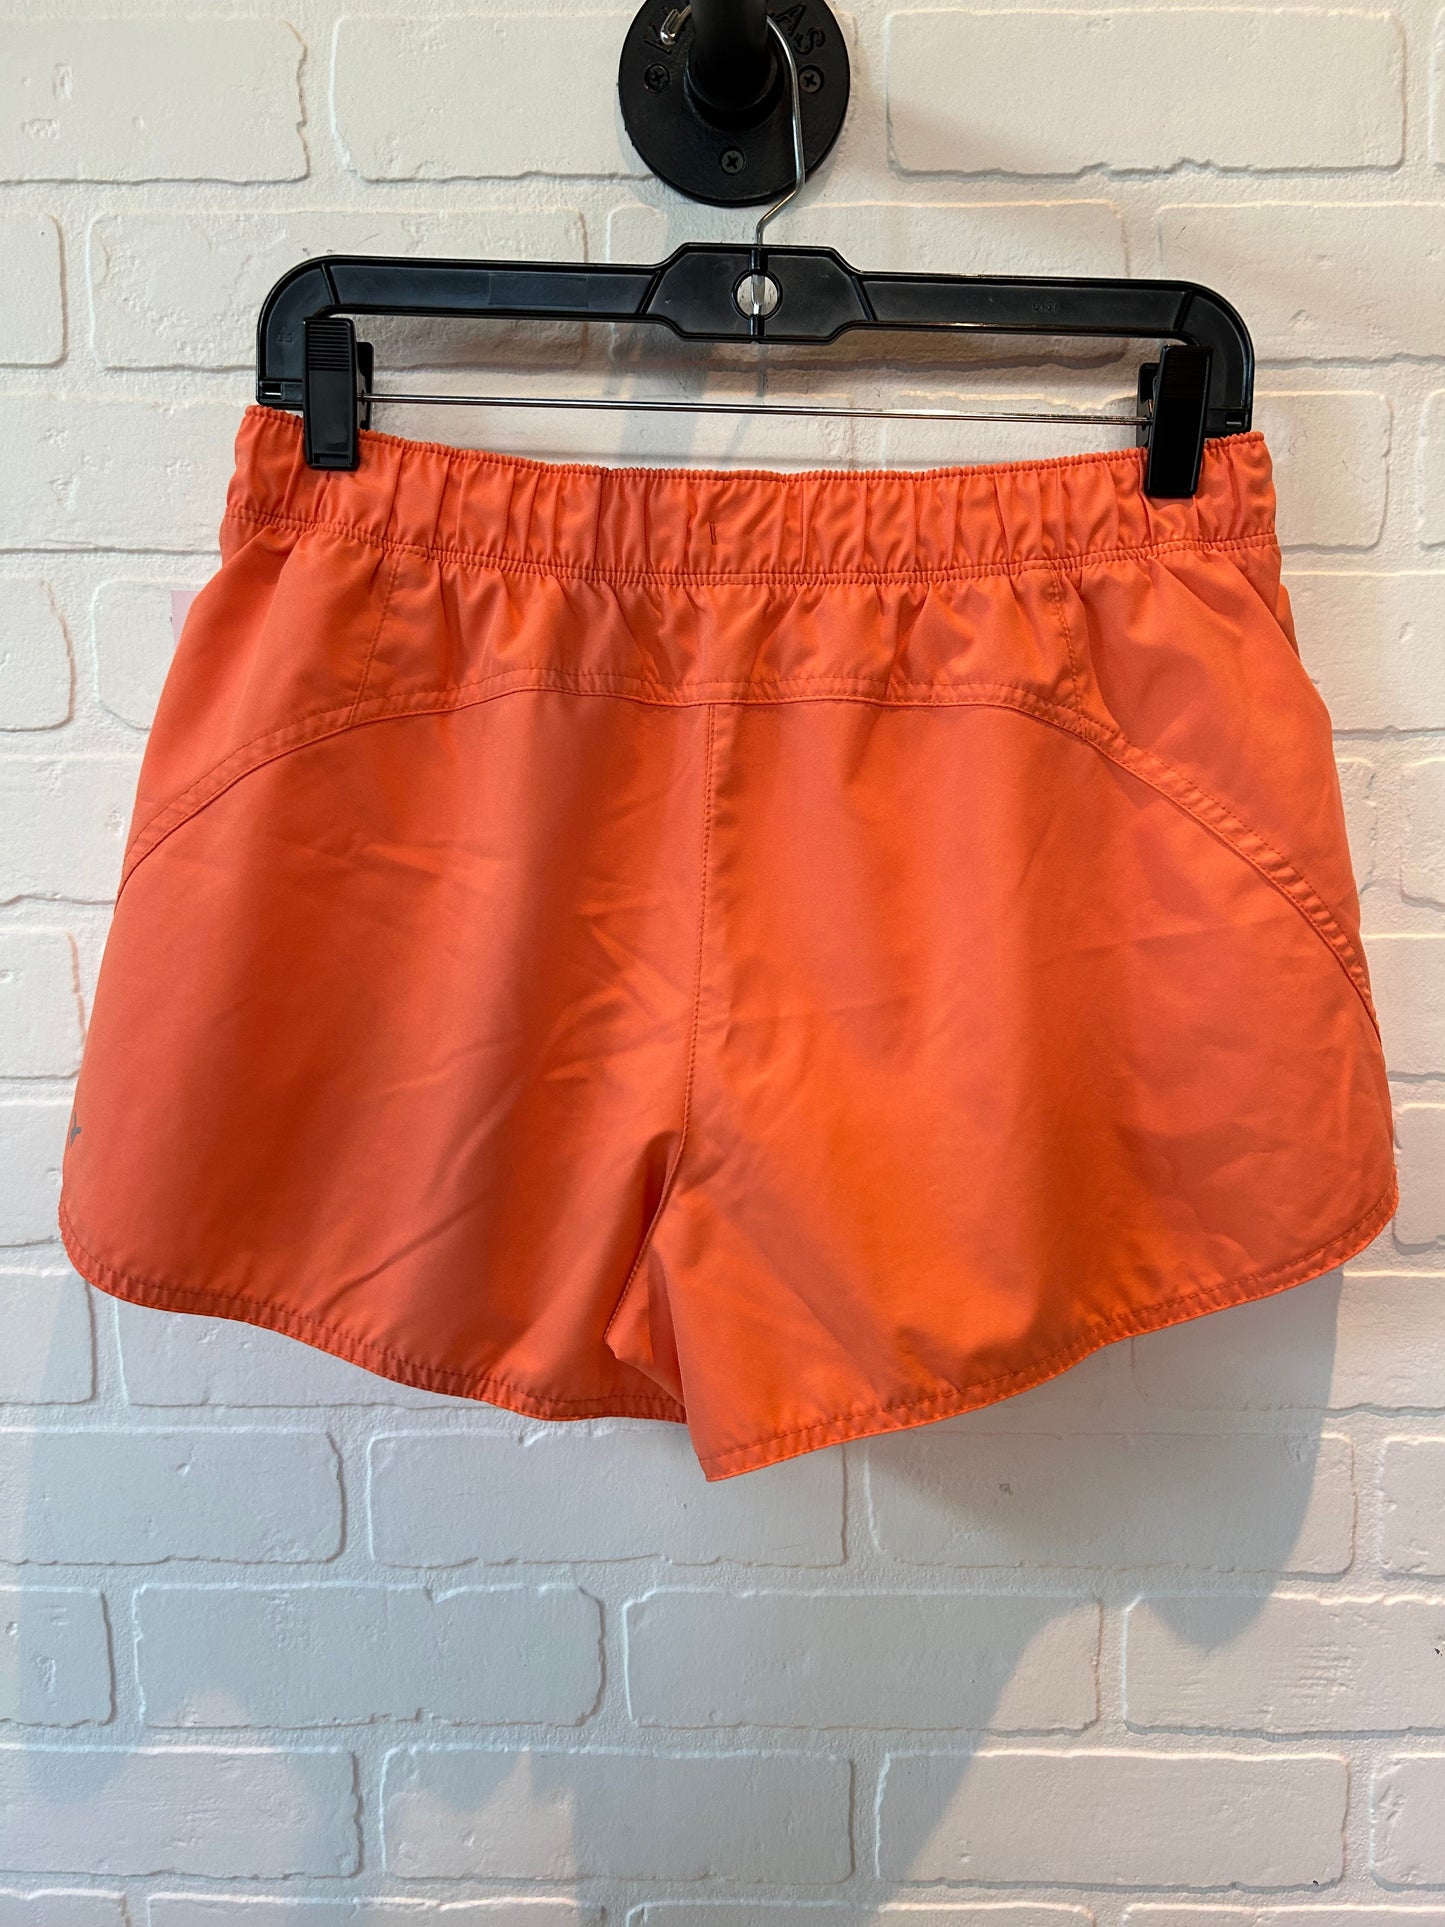 Orange Athletic Shorts Old Navy, Size 8